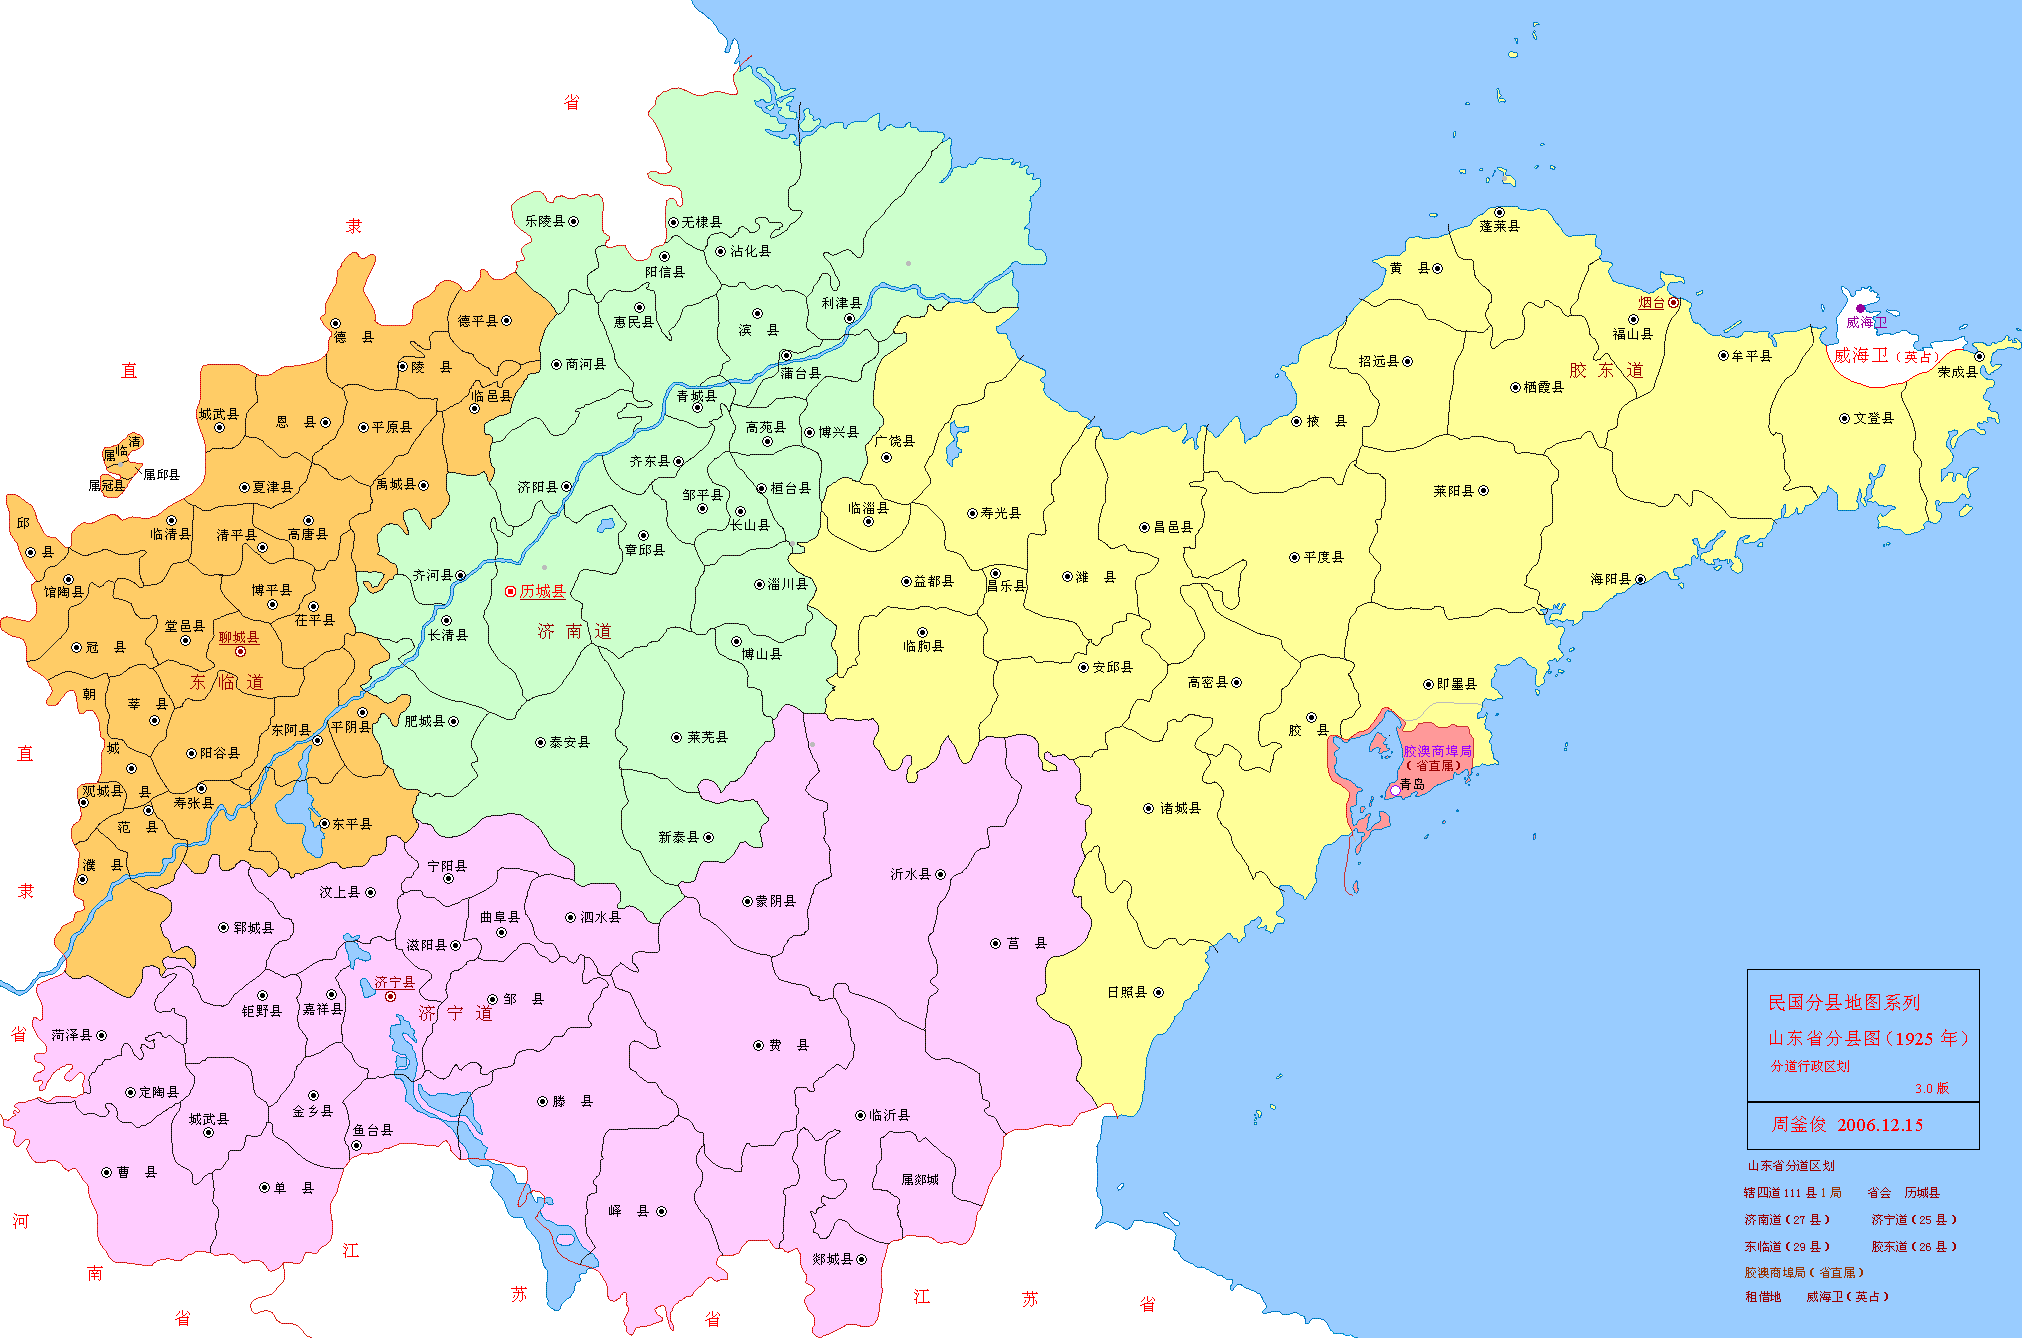 民国1925年山东地图,黄色为胶东道